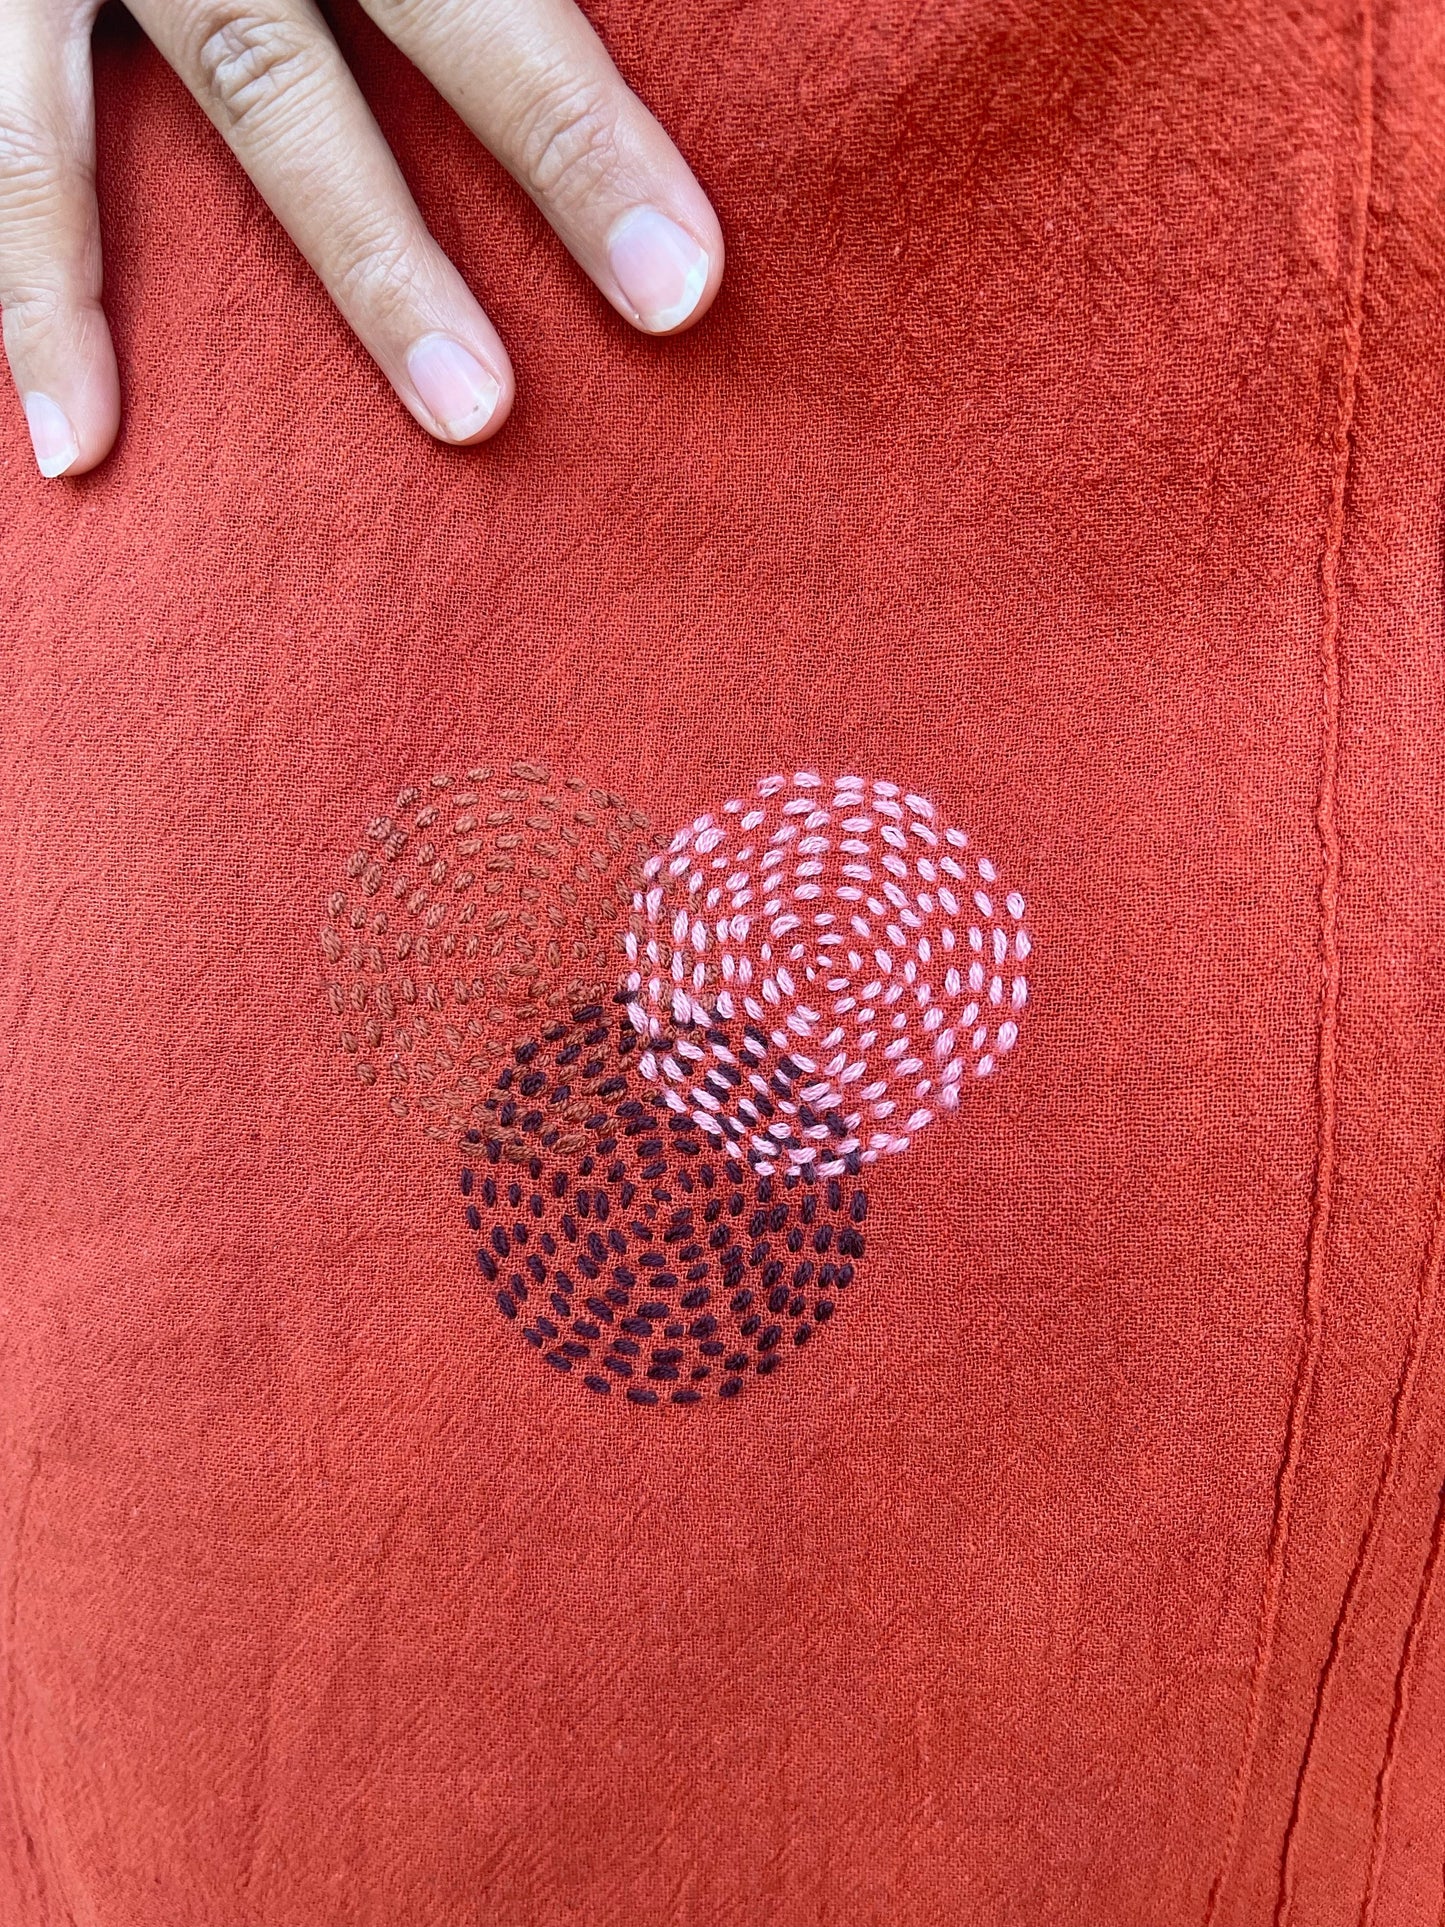 MALA handworks Miyu Midi Dress in Rust Orange and Hand Embroidery